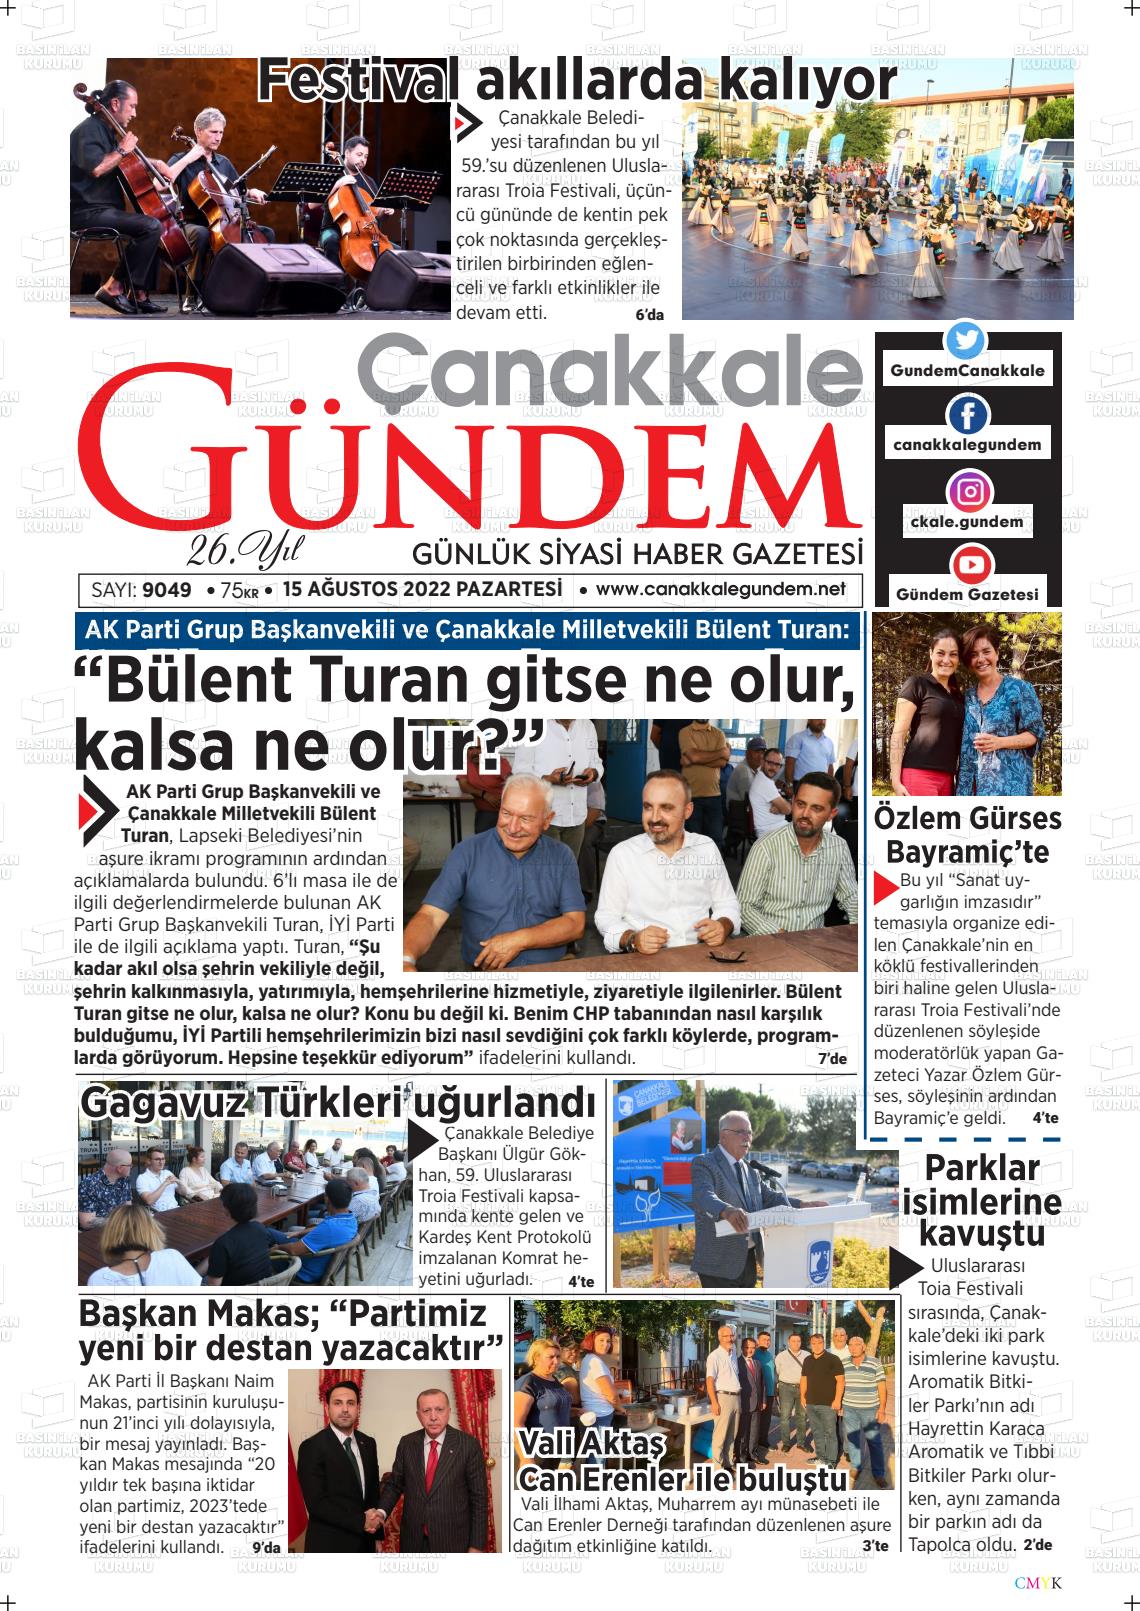 15 Ağustos 2022 Çanakkale Gündem Gazete Manşeti